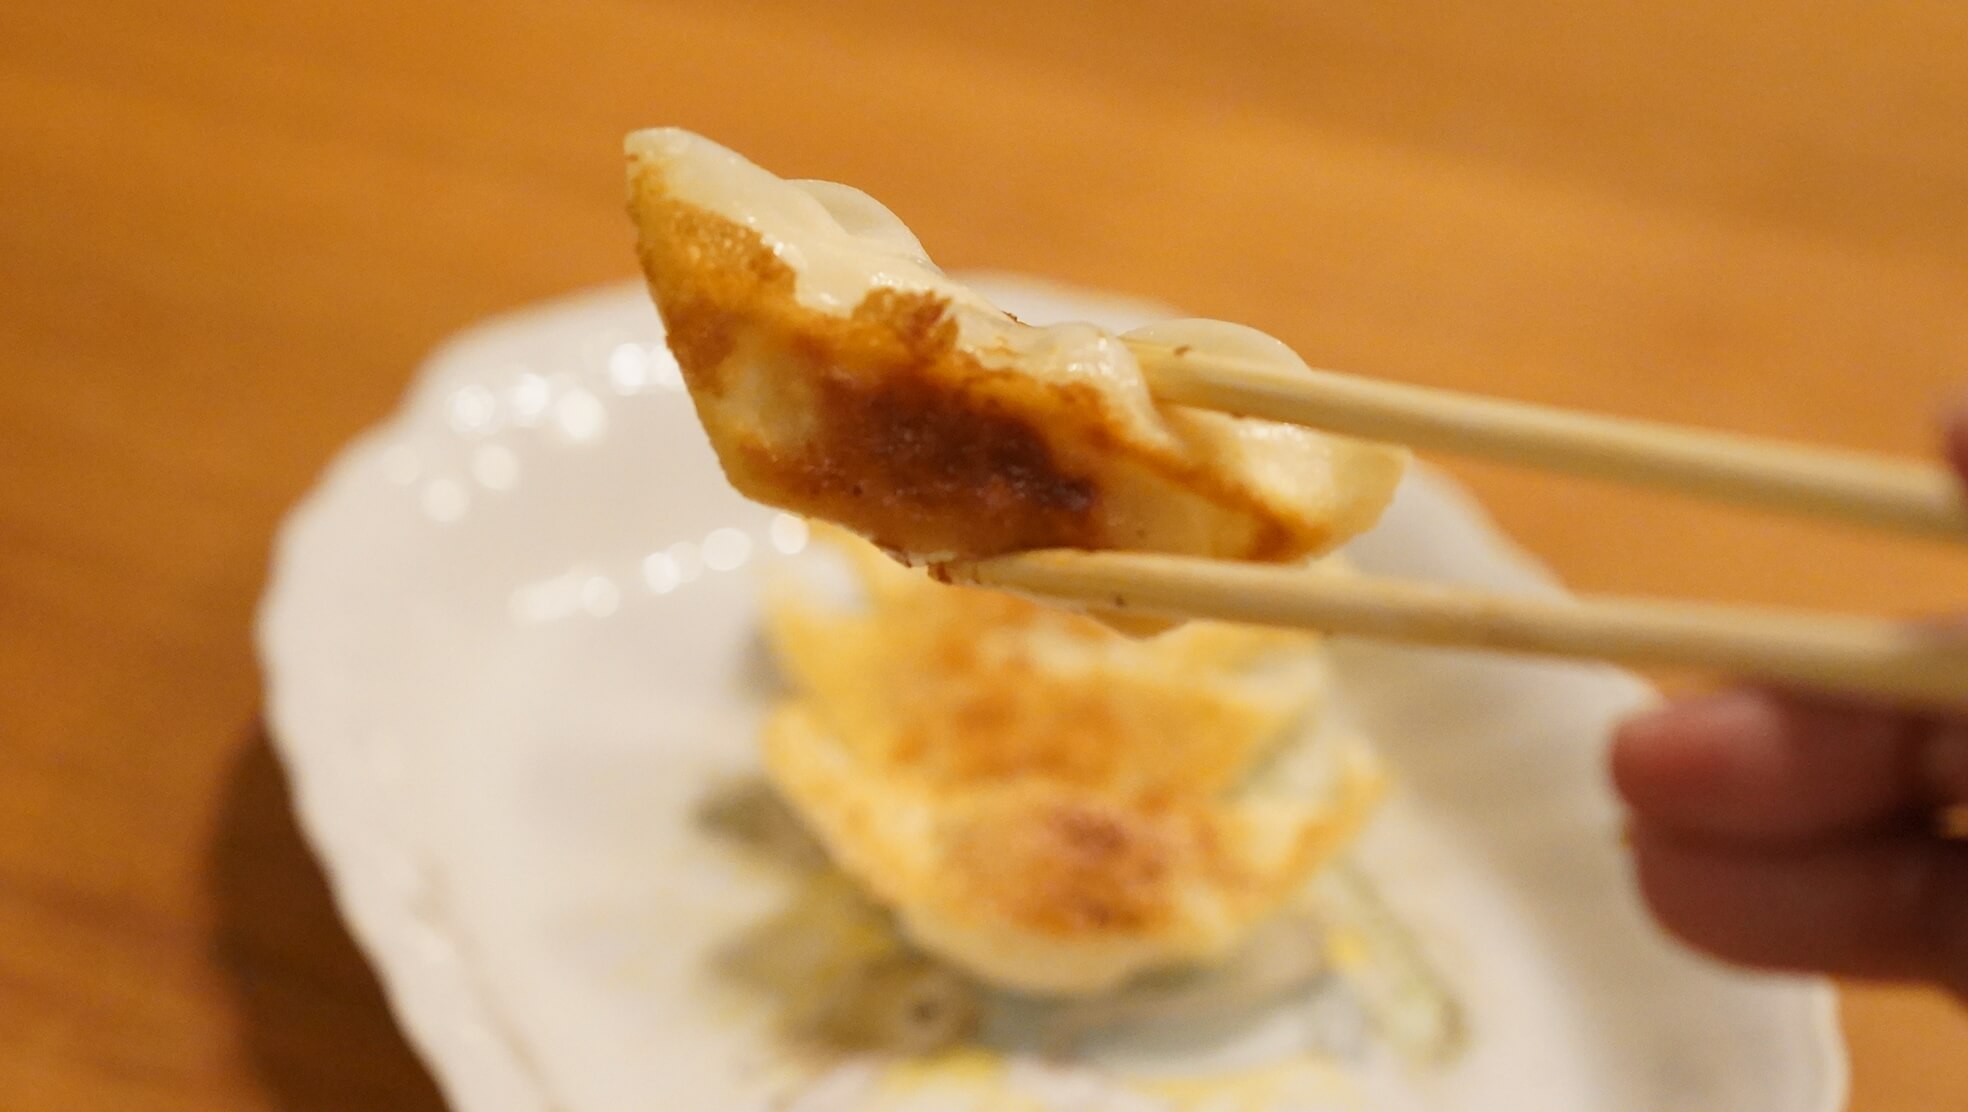 味の素のアスリート向け冷凍餃子「エナジーギョーザ」を箸でつまんでいる写真